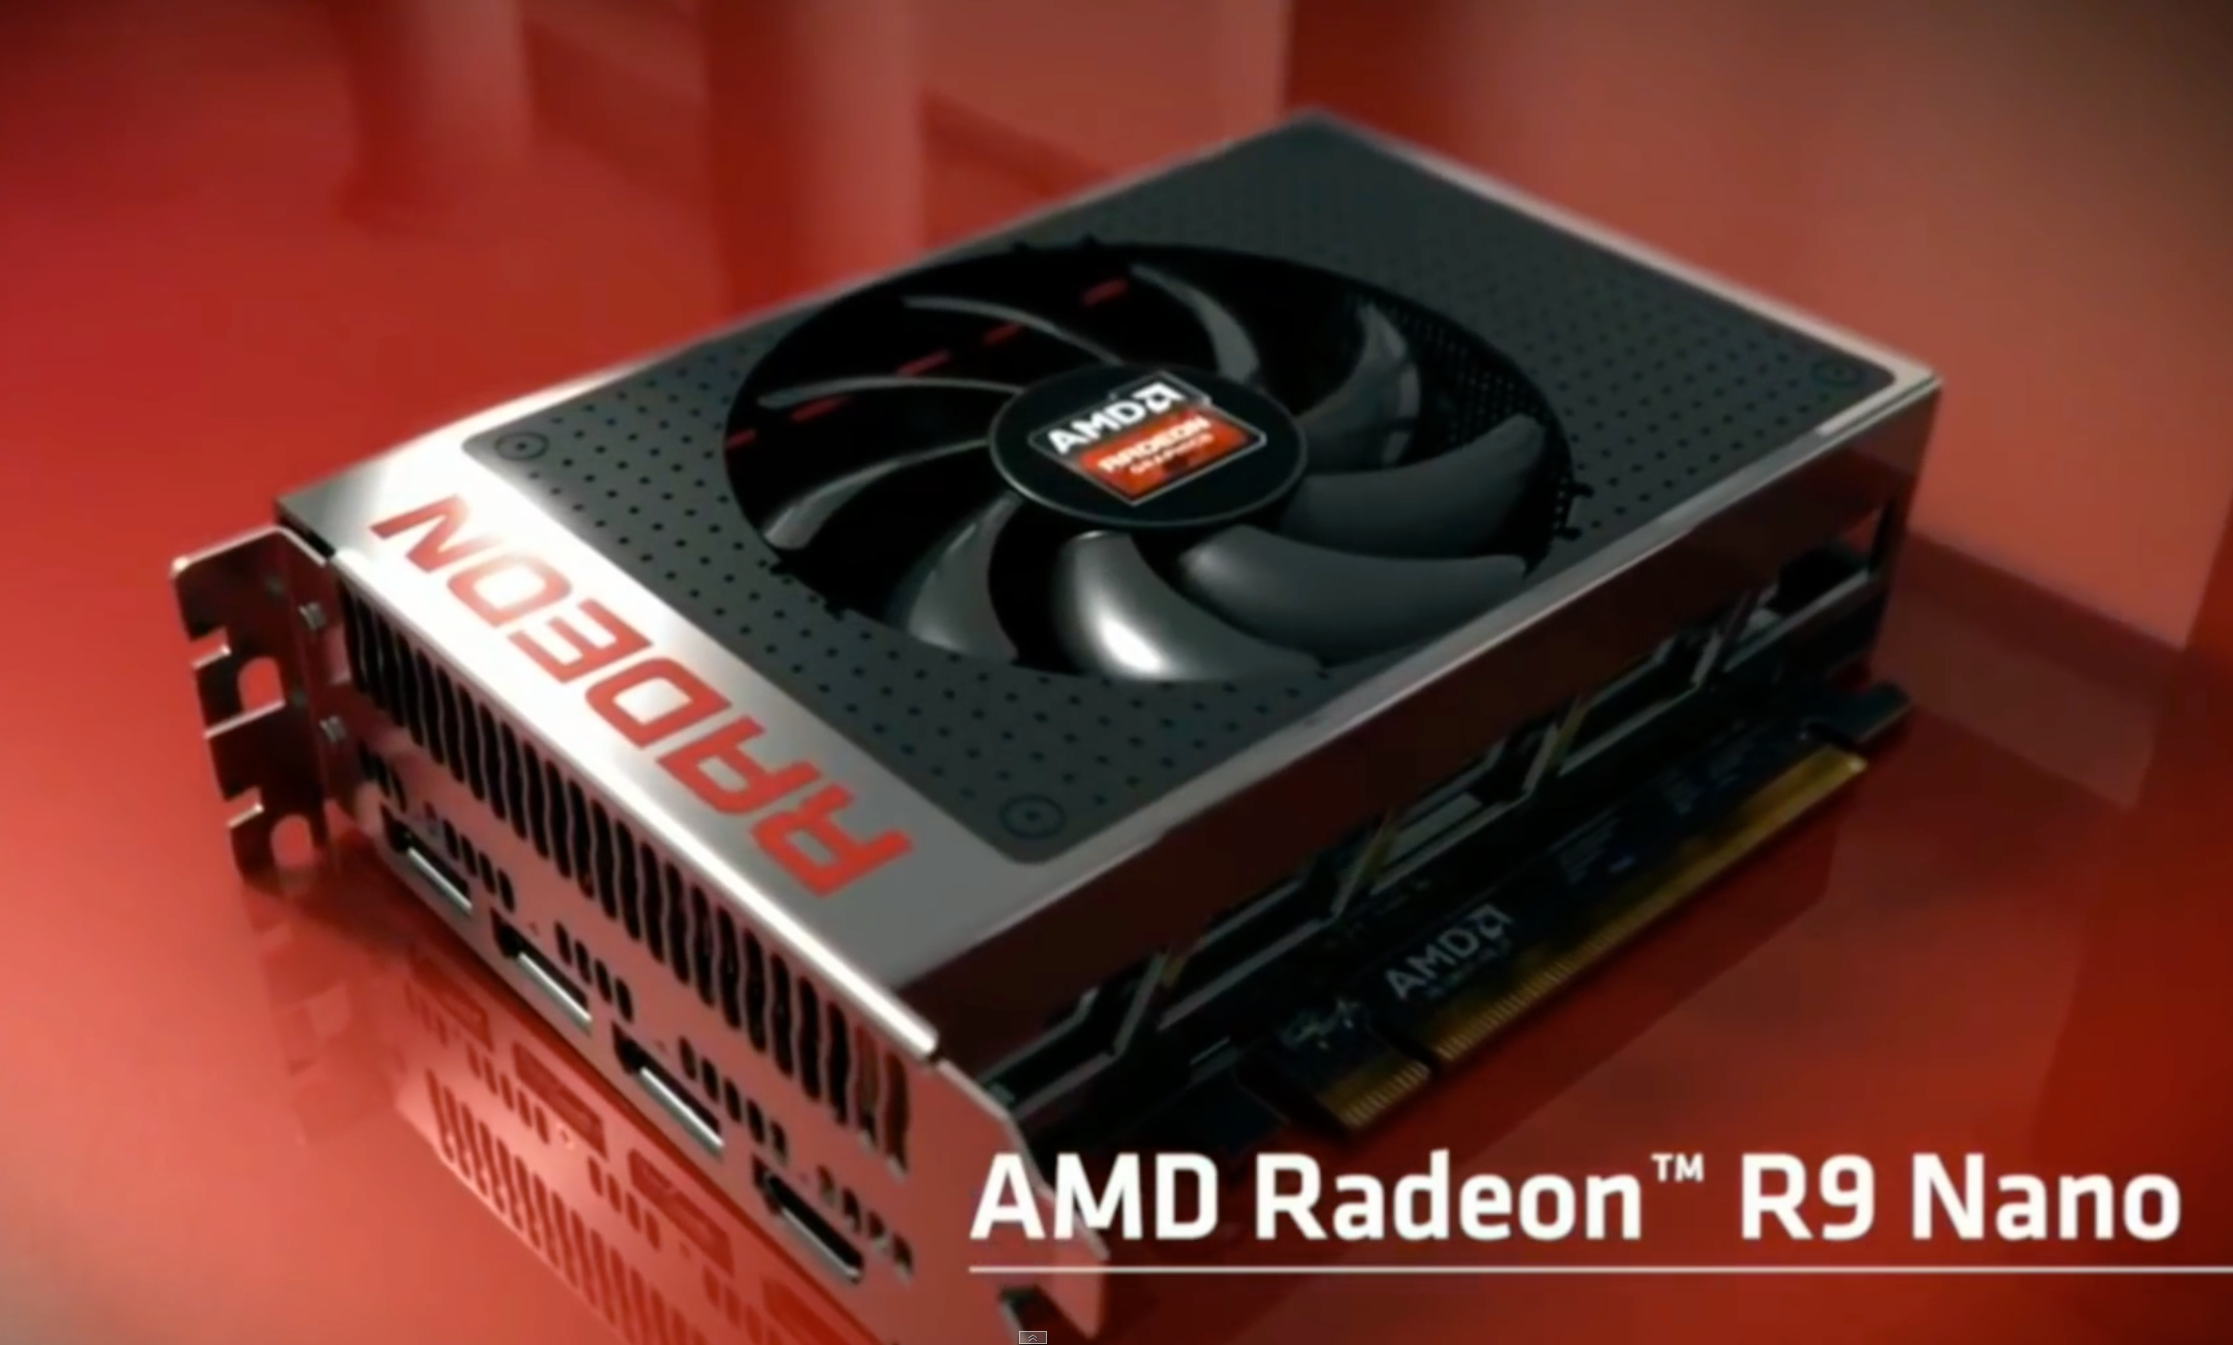 Radeon Nano er kun 15 centimeter langt men sprekere enn Radeon R9 290X, forteller AMD.